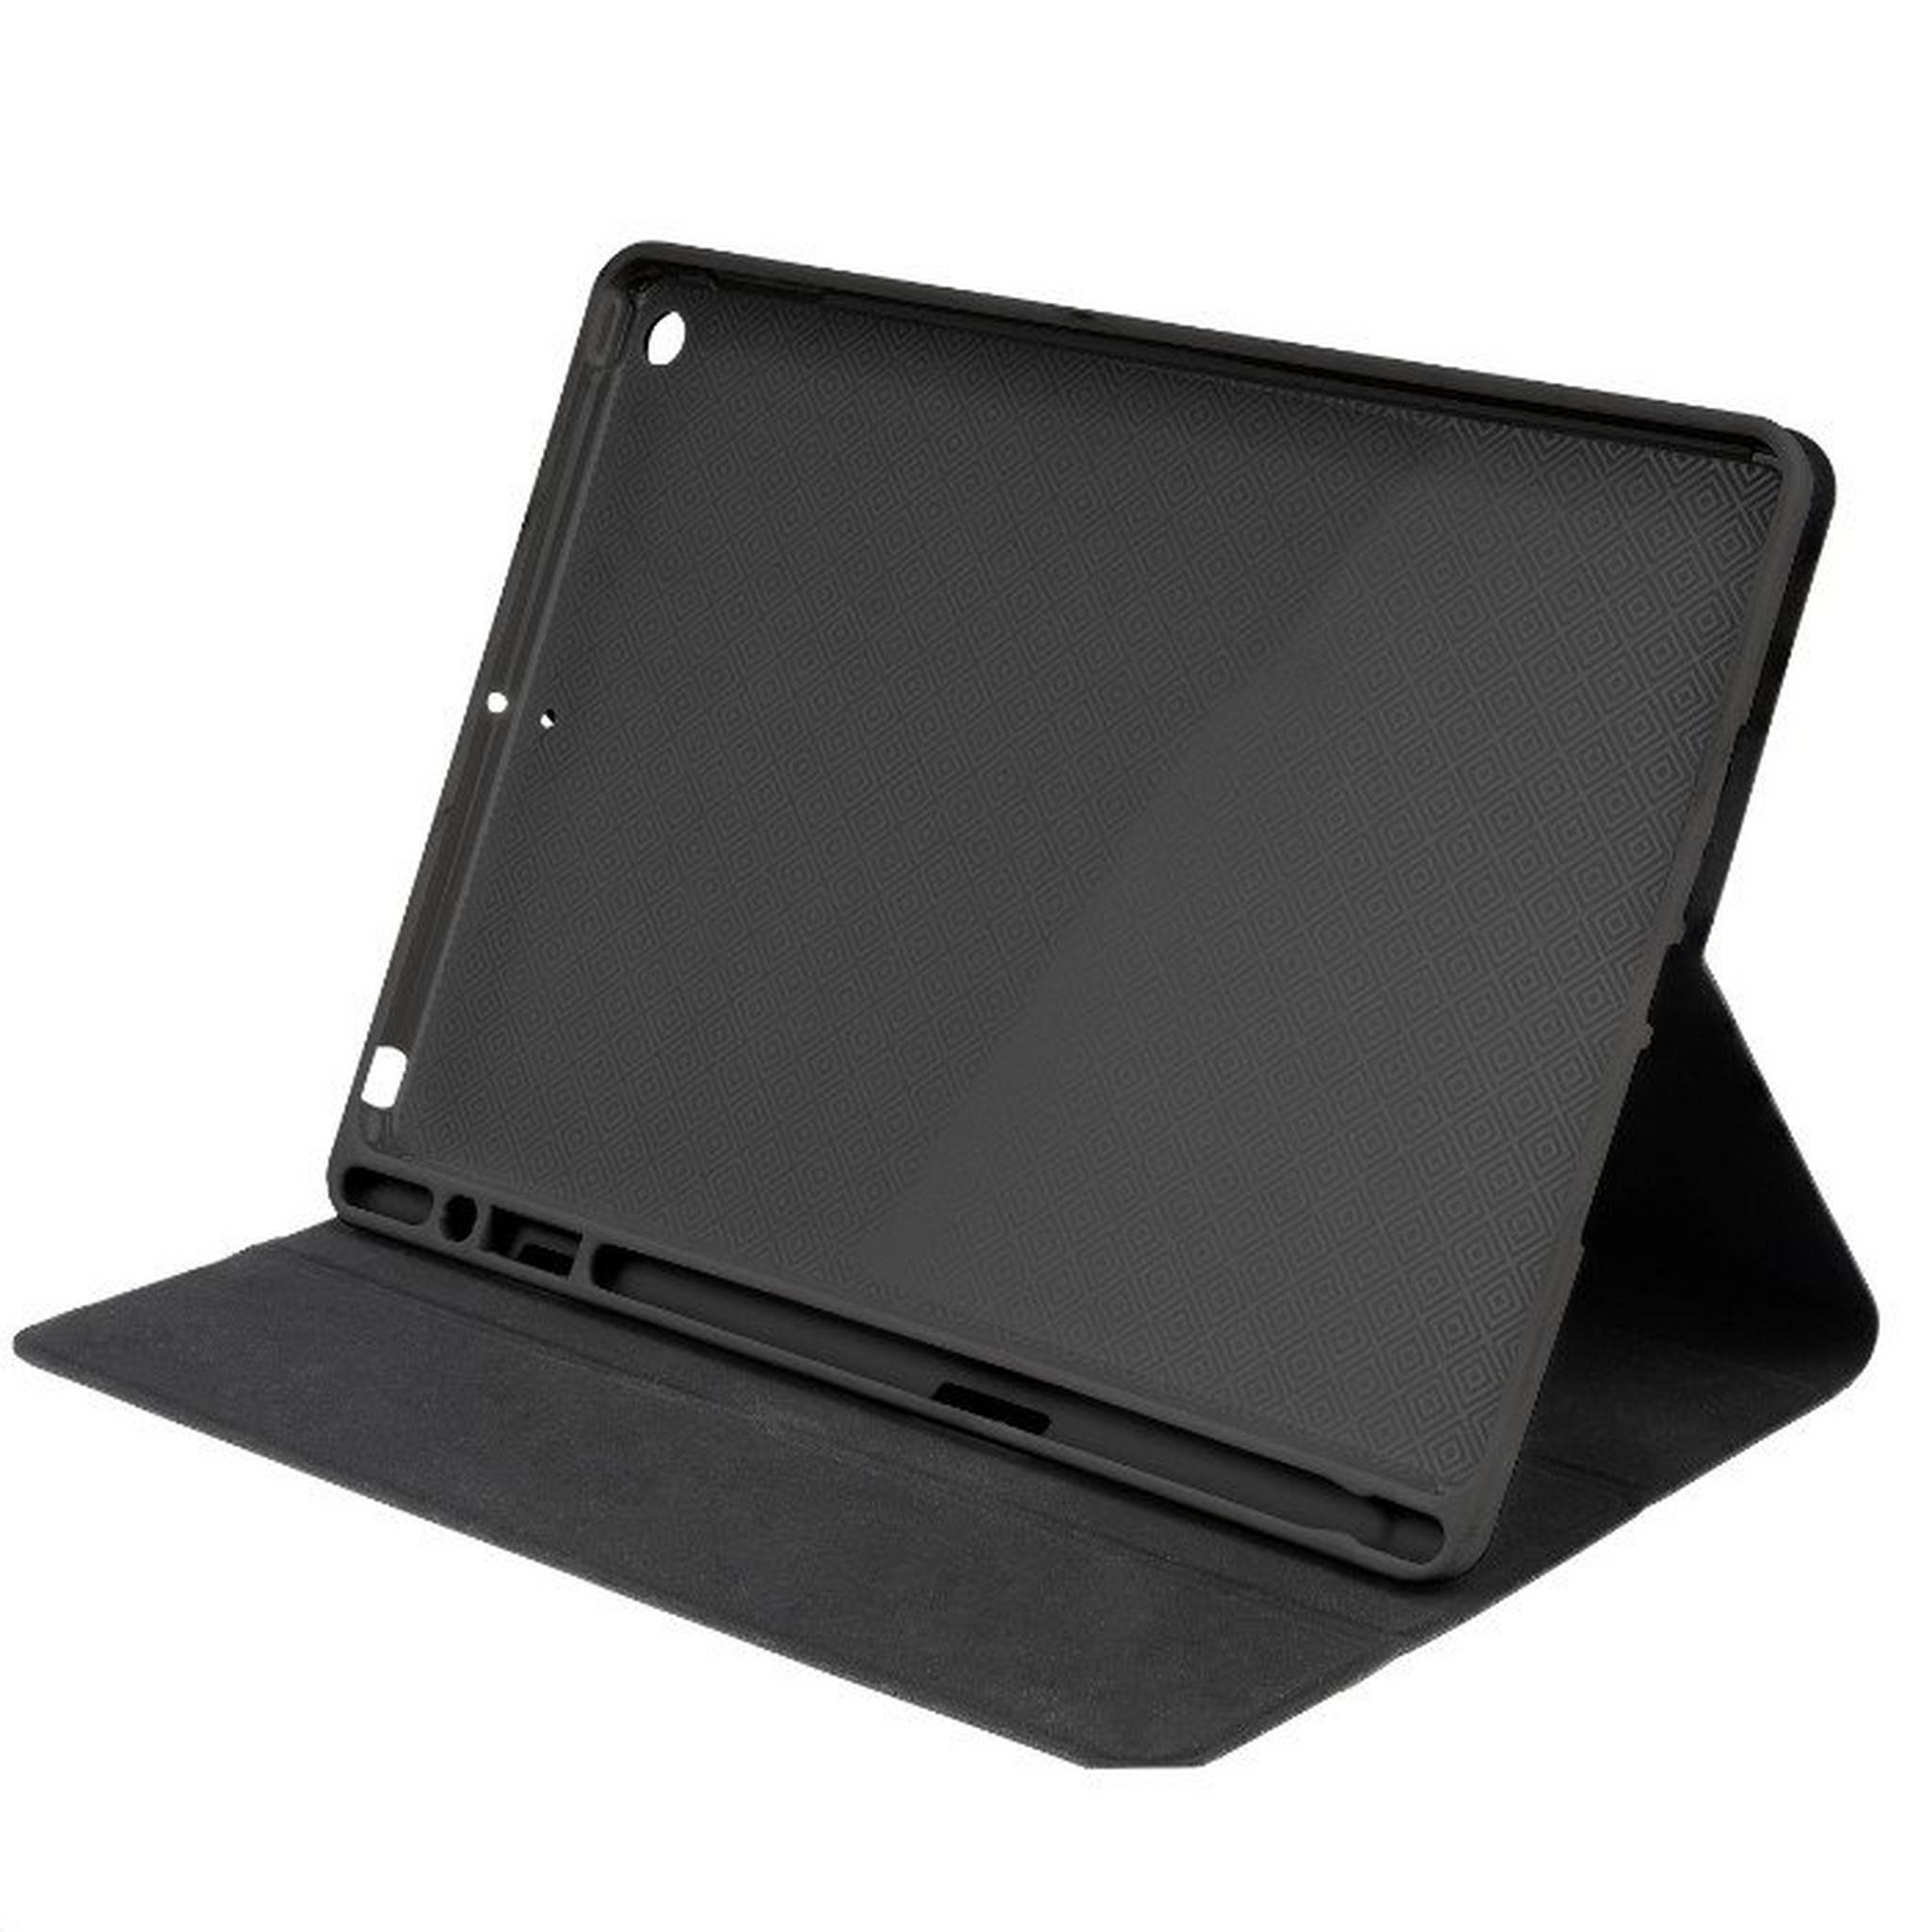 Tucano Up Plus Folio Case for iPad 10.2" and iPad Air 10,5", IPD102UPP-BK – Black